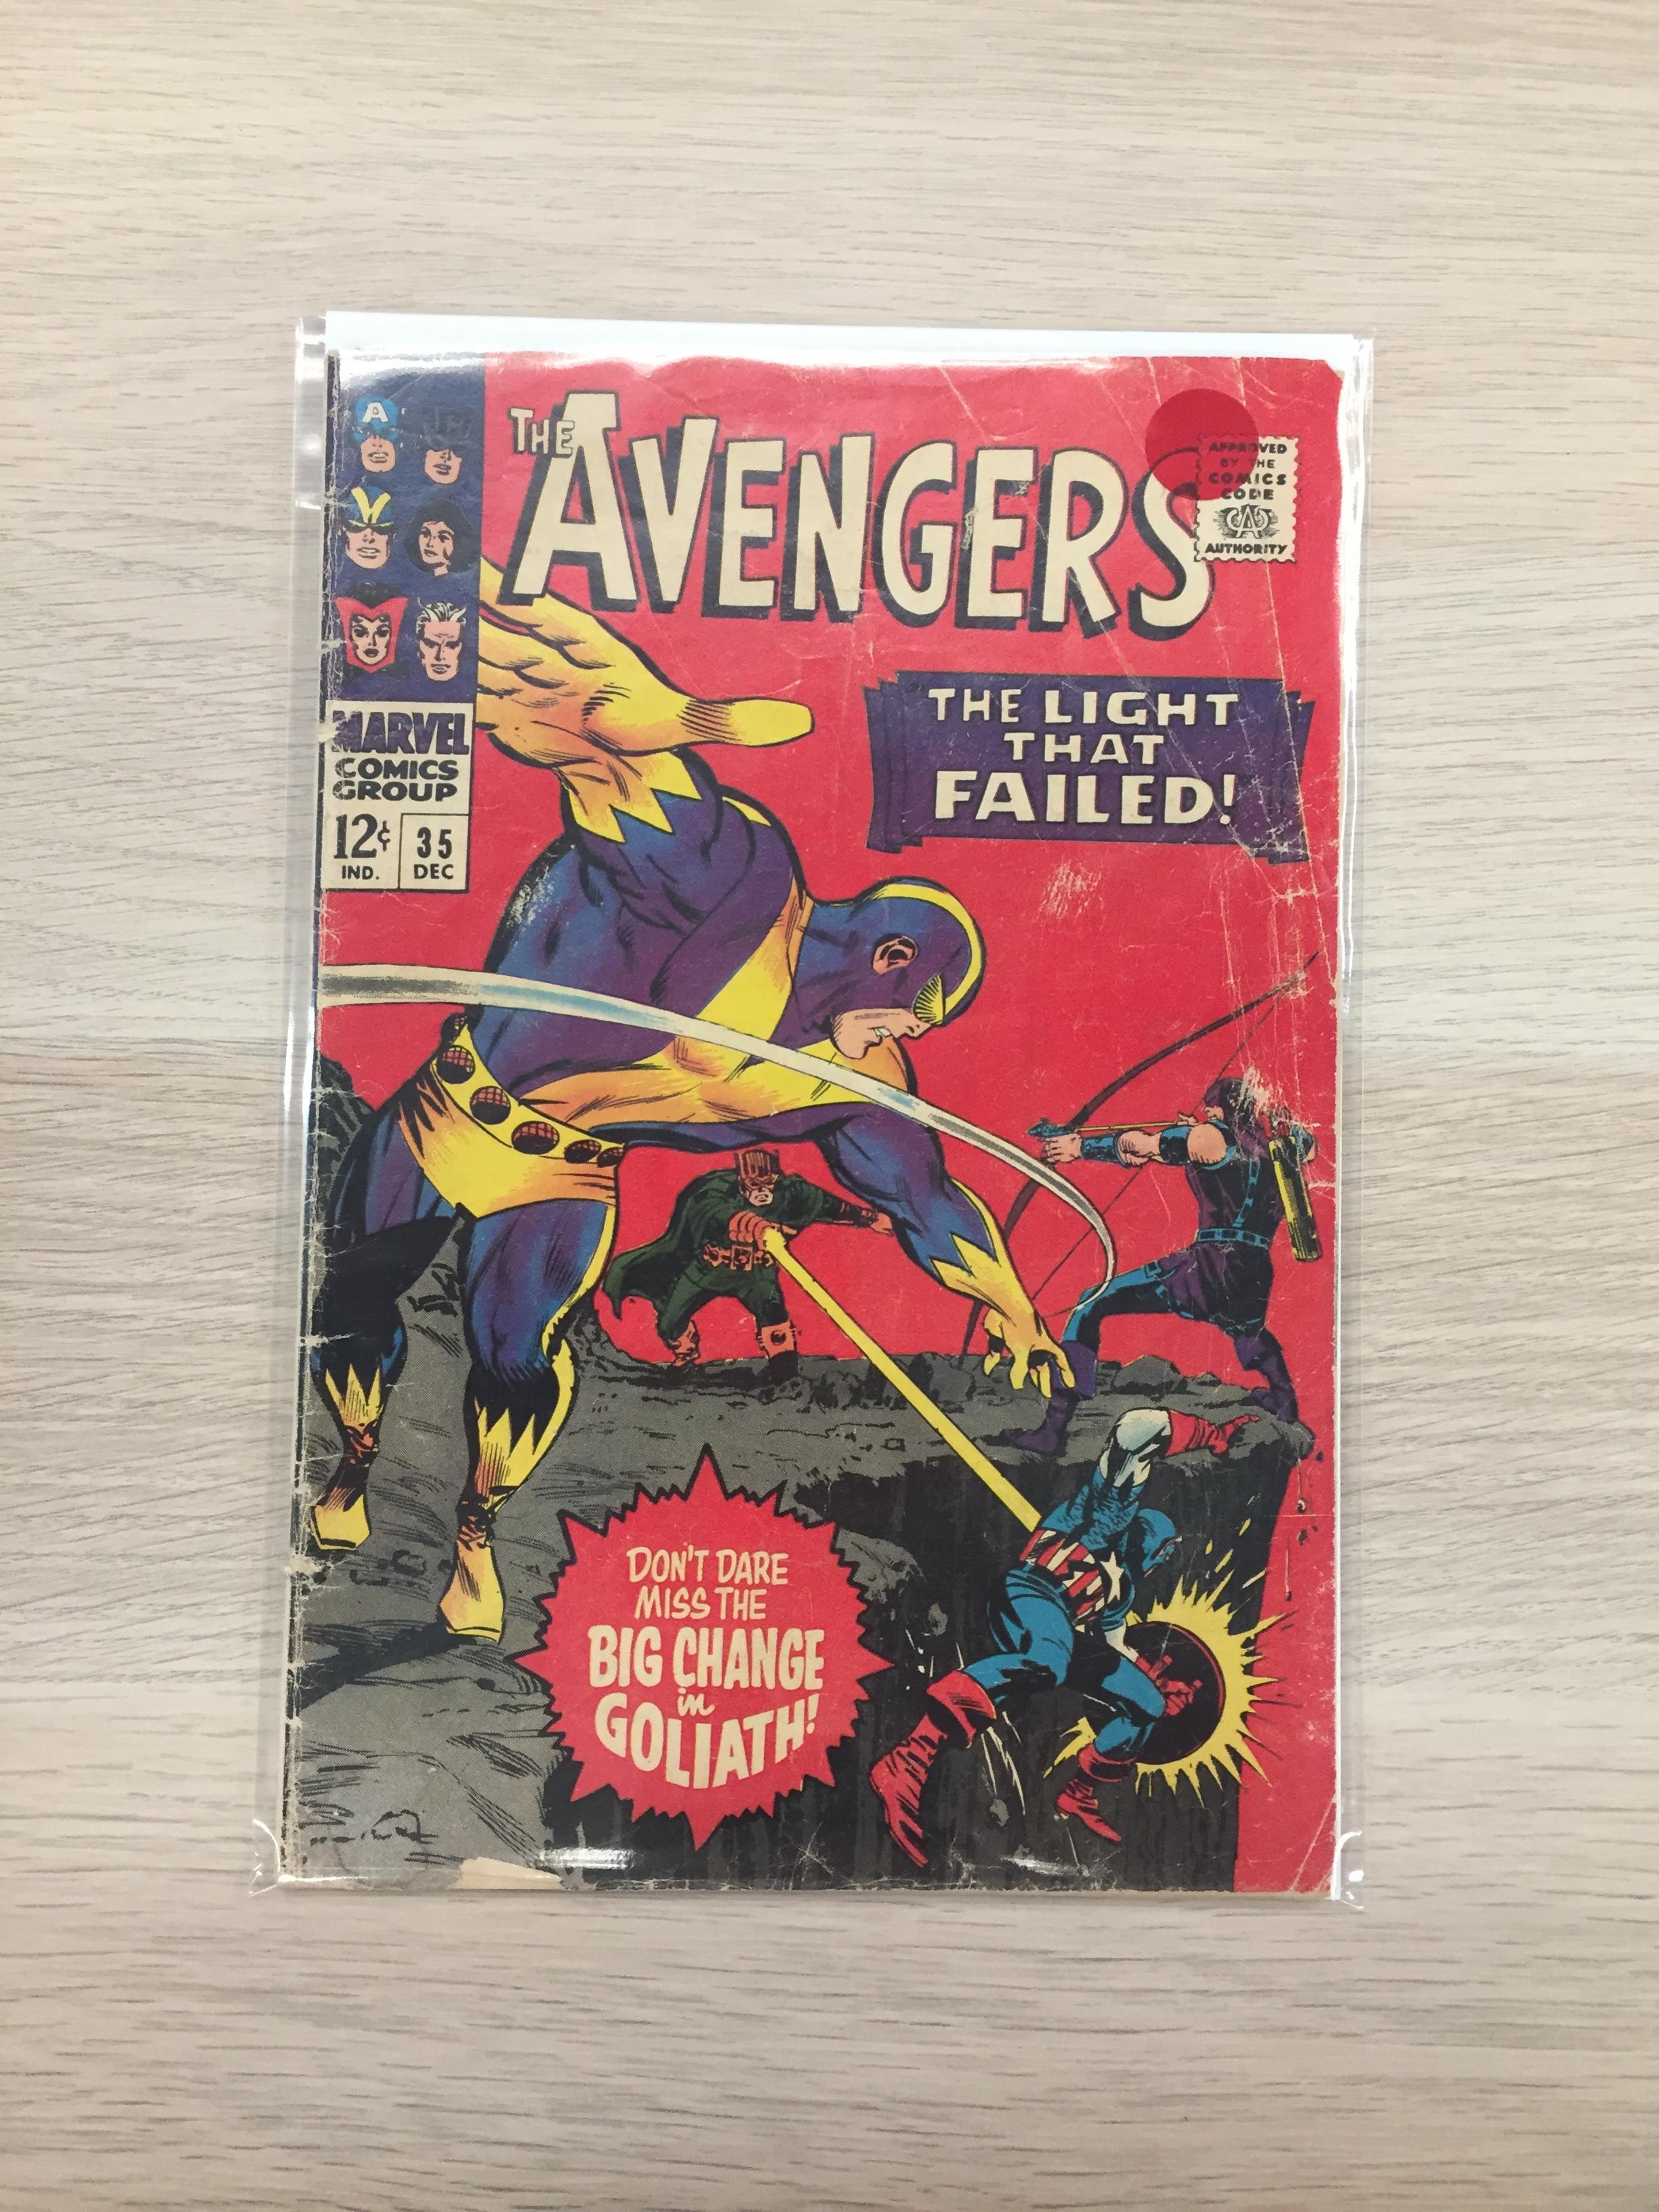 The Avengers #35 - Marvel Comic Book